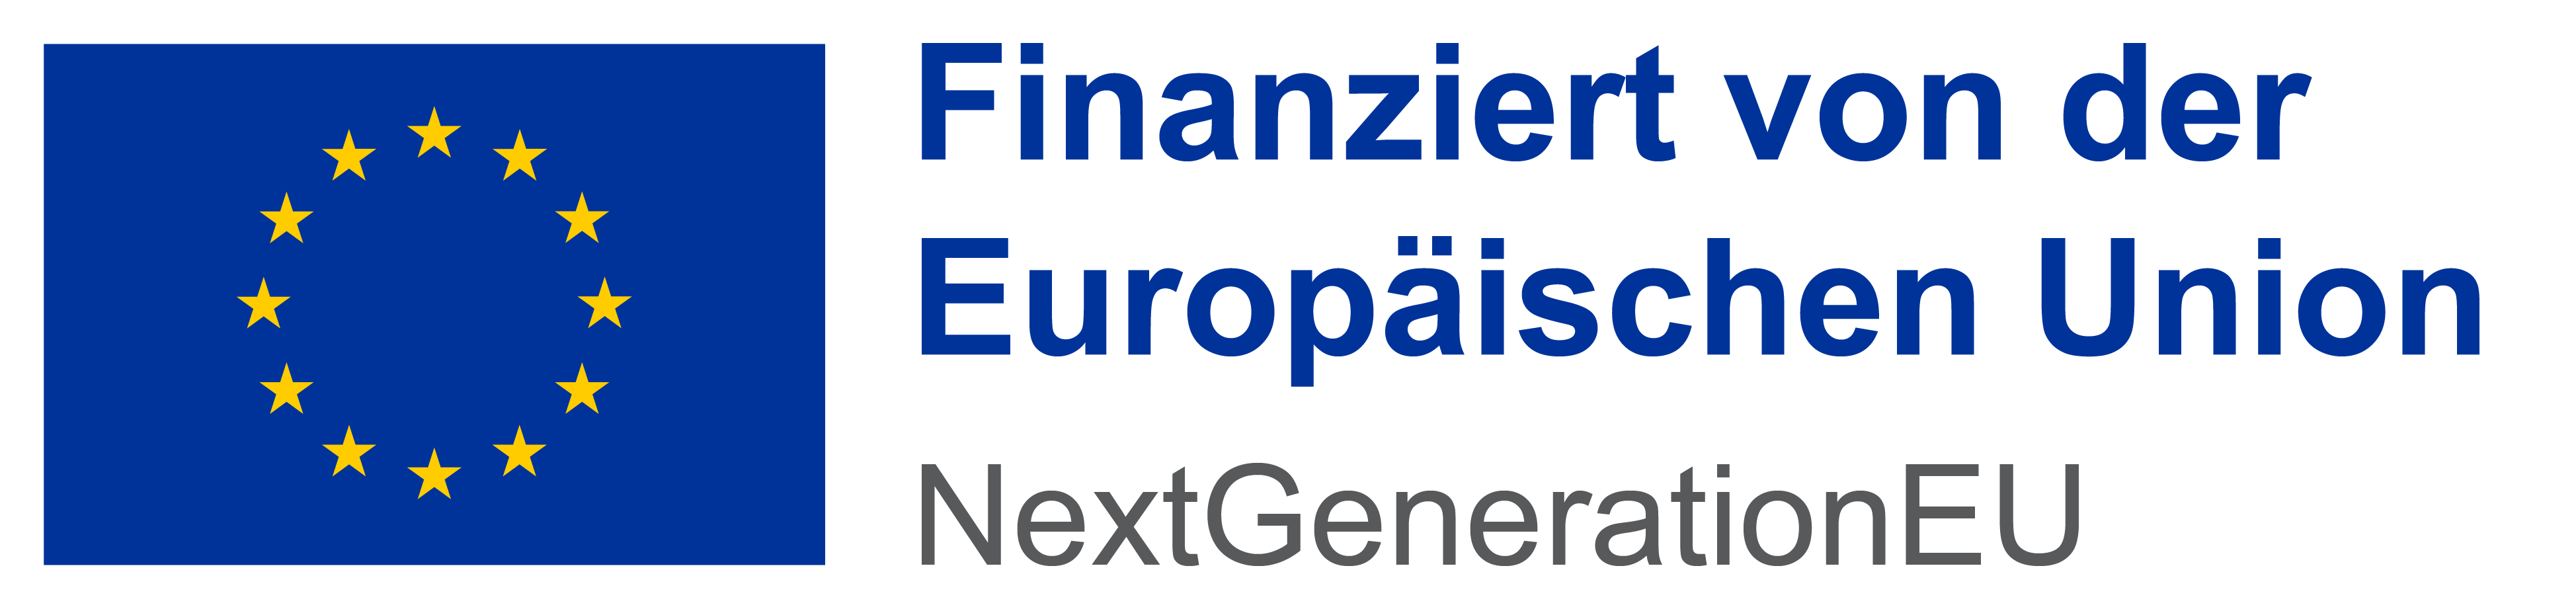 Finanziert von der Europäischen Union - NextGenerationEU